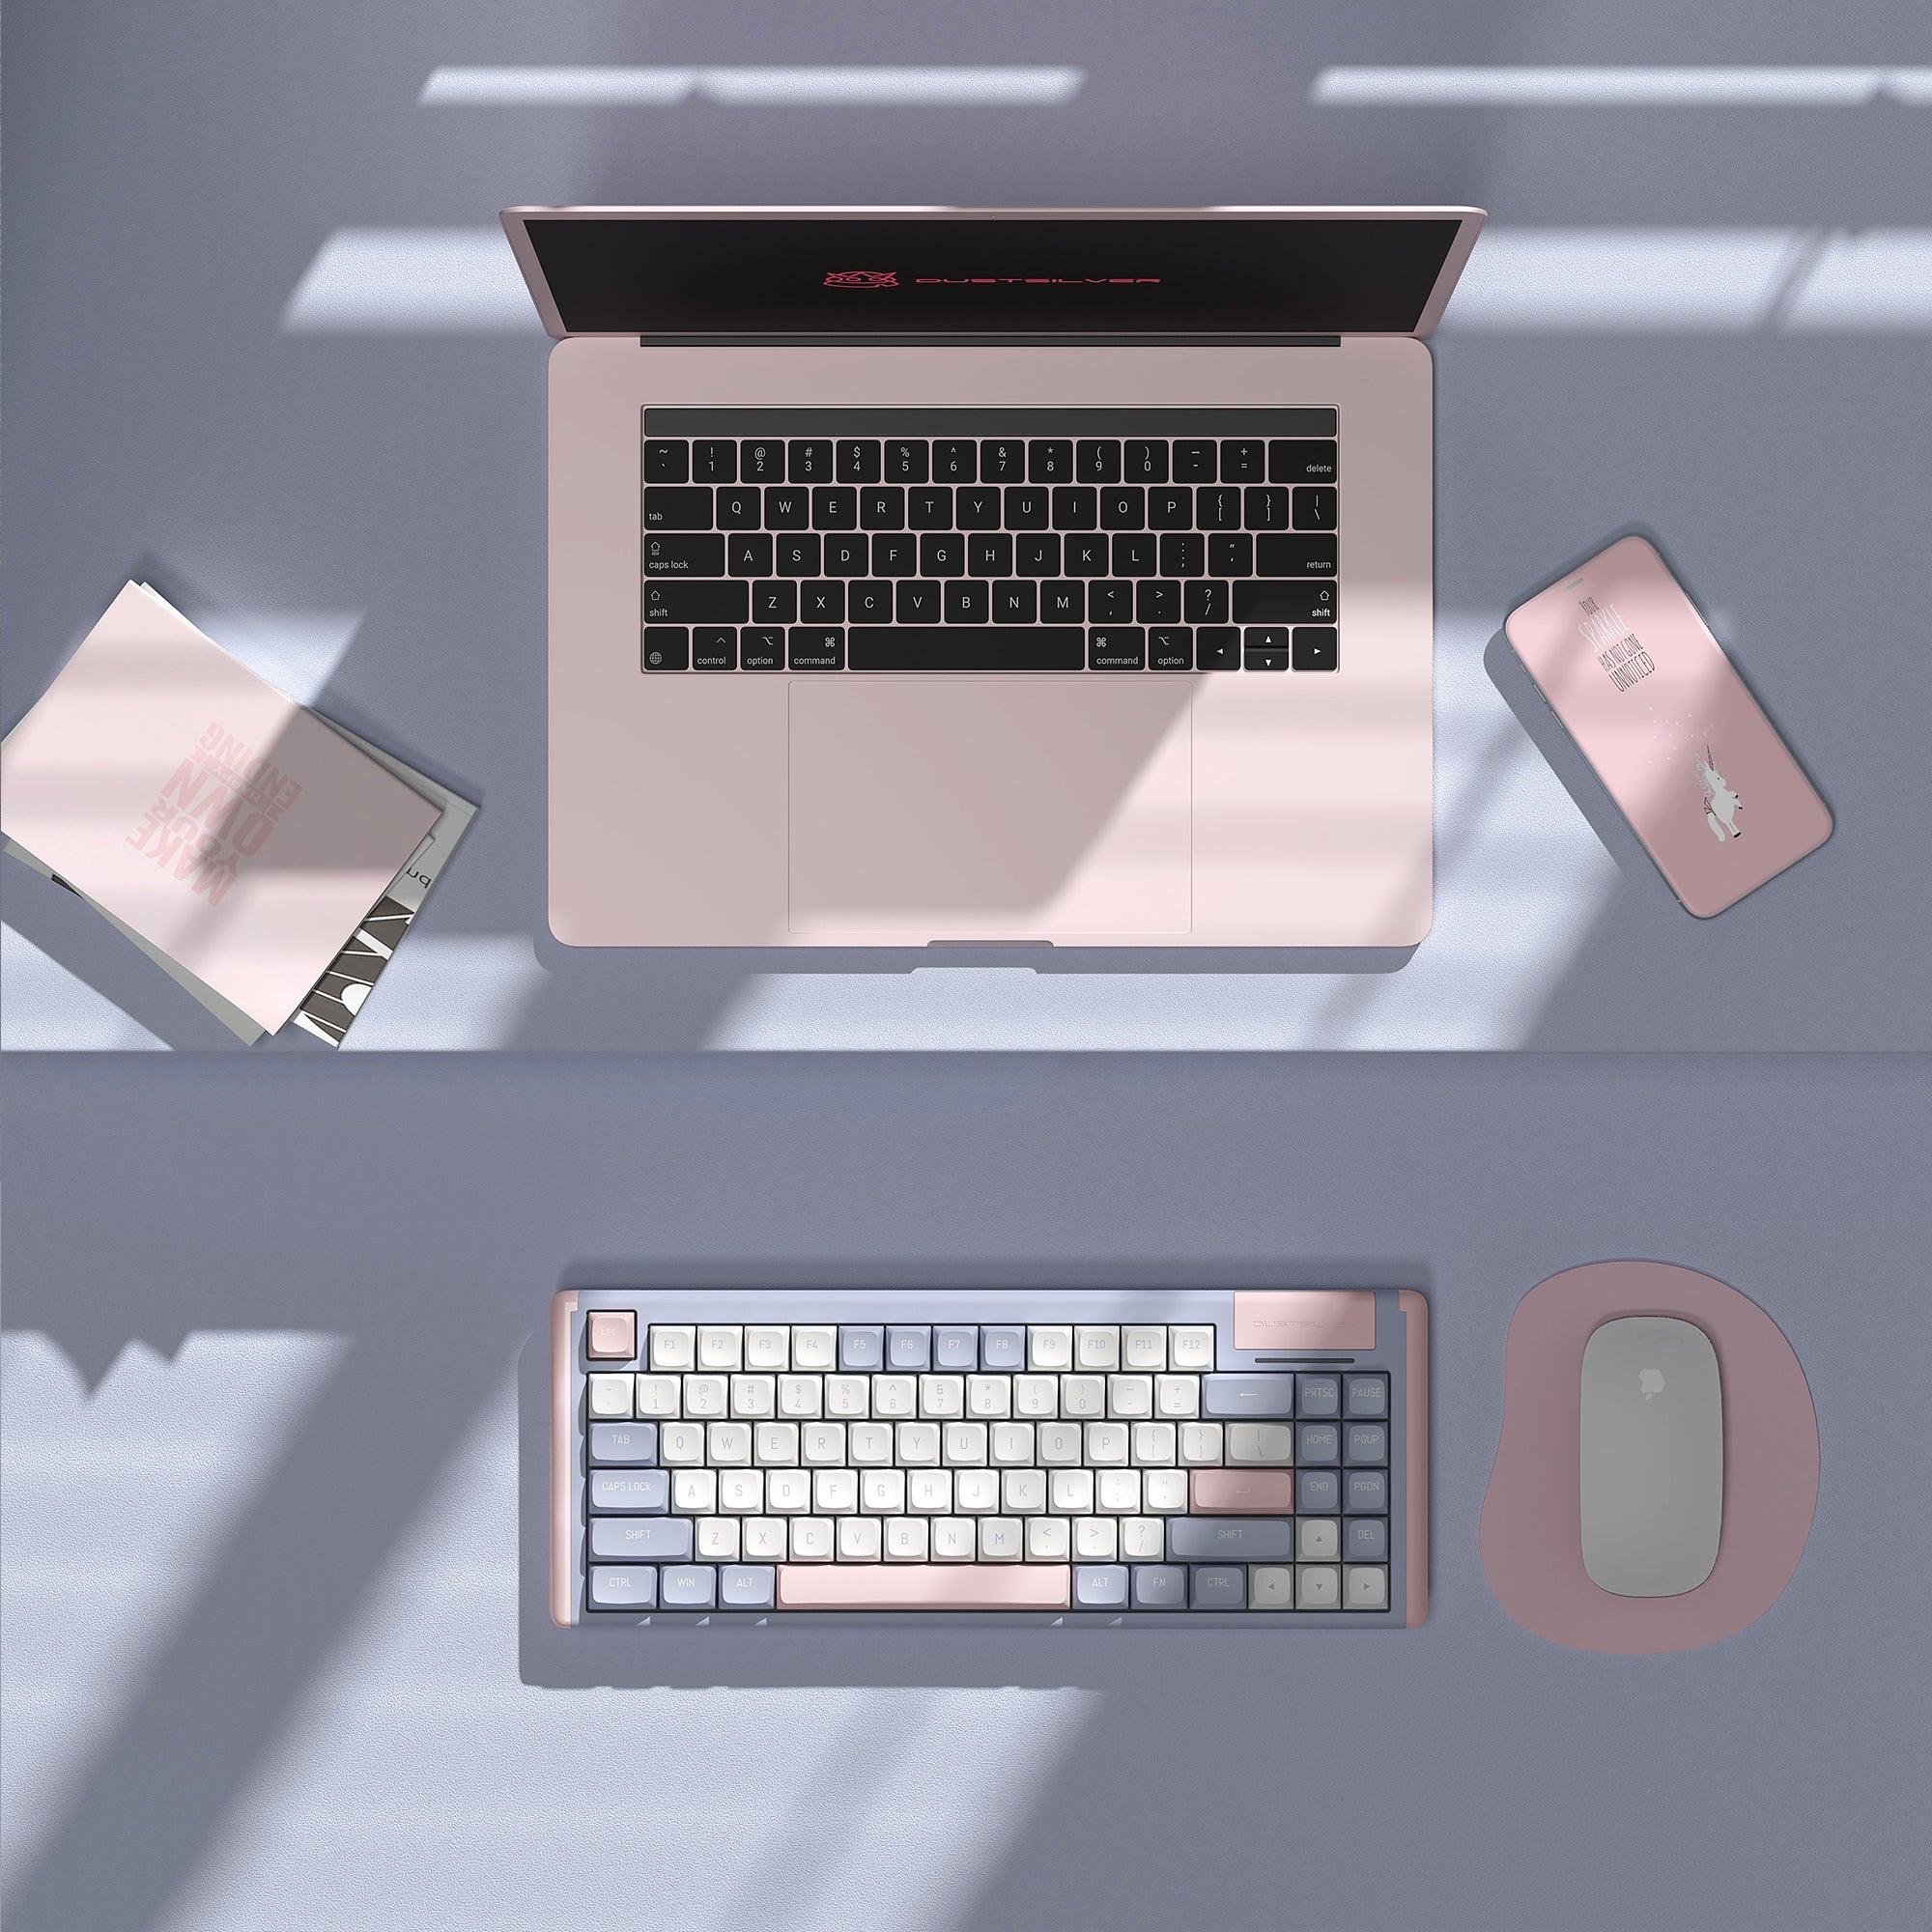 Dustsilver Lilac 75 Percent Wired Mechanical Keyboard - dustsilver